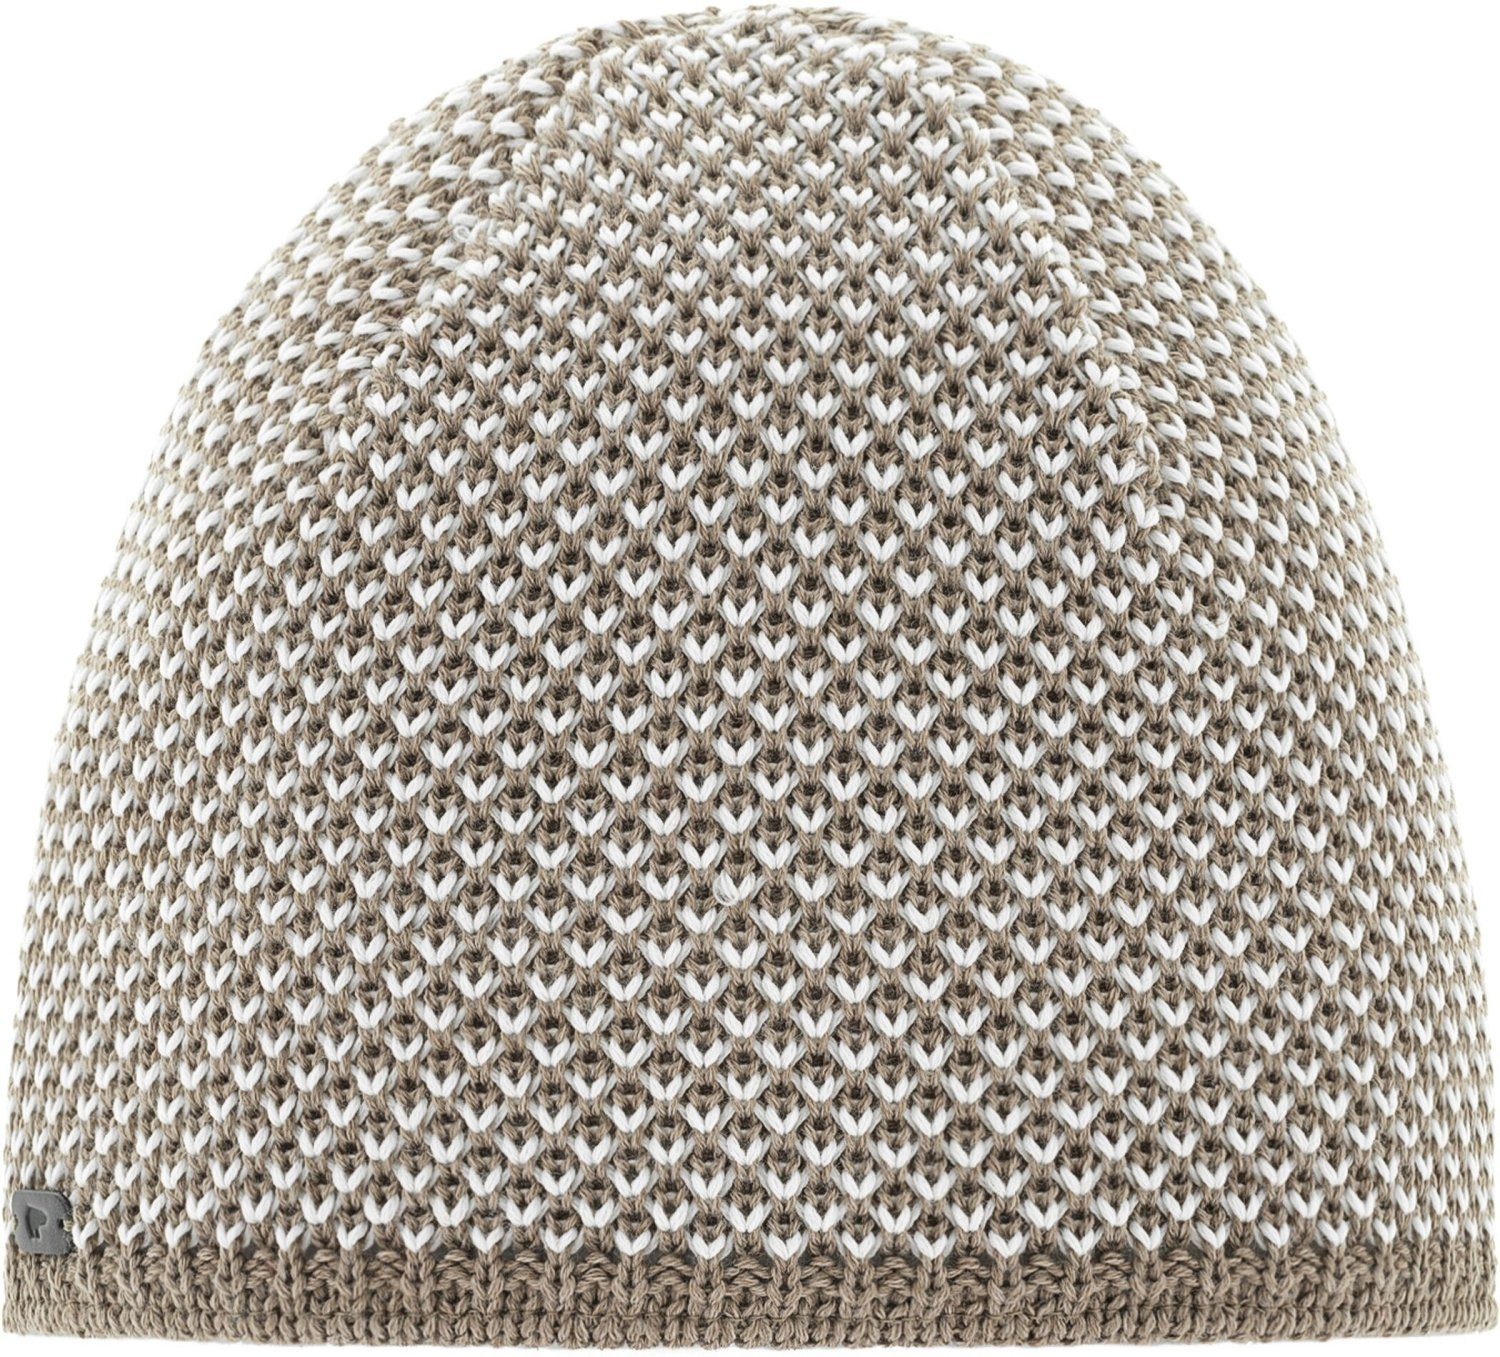 Eisbär Strickmütze Sanja Mütze mit Struktur beige/braun